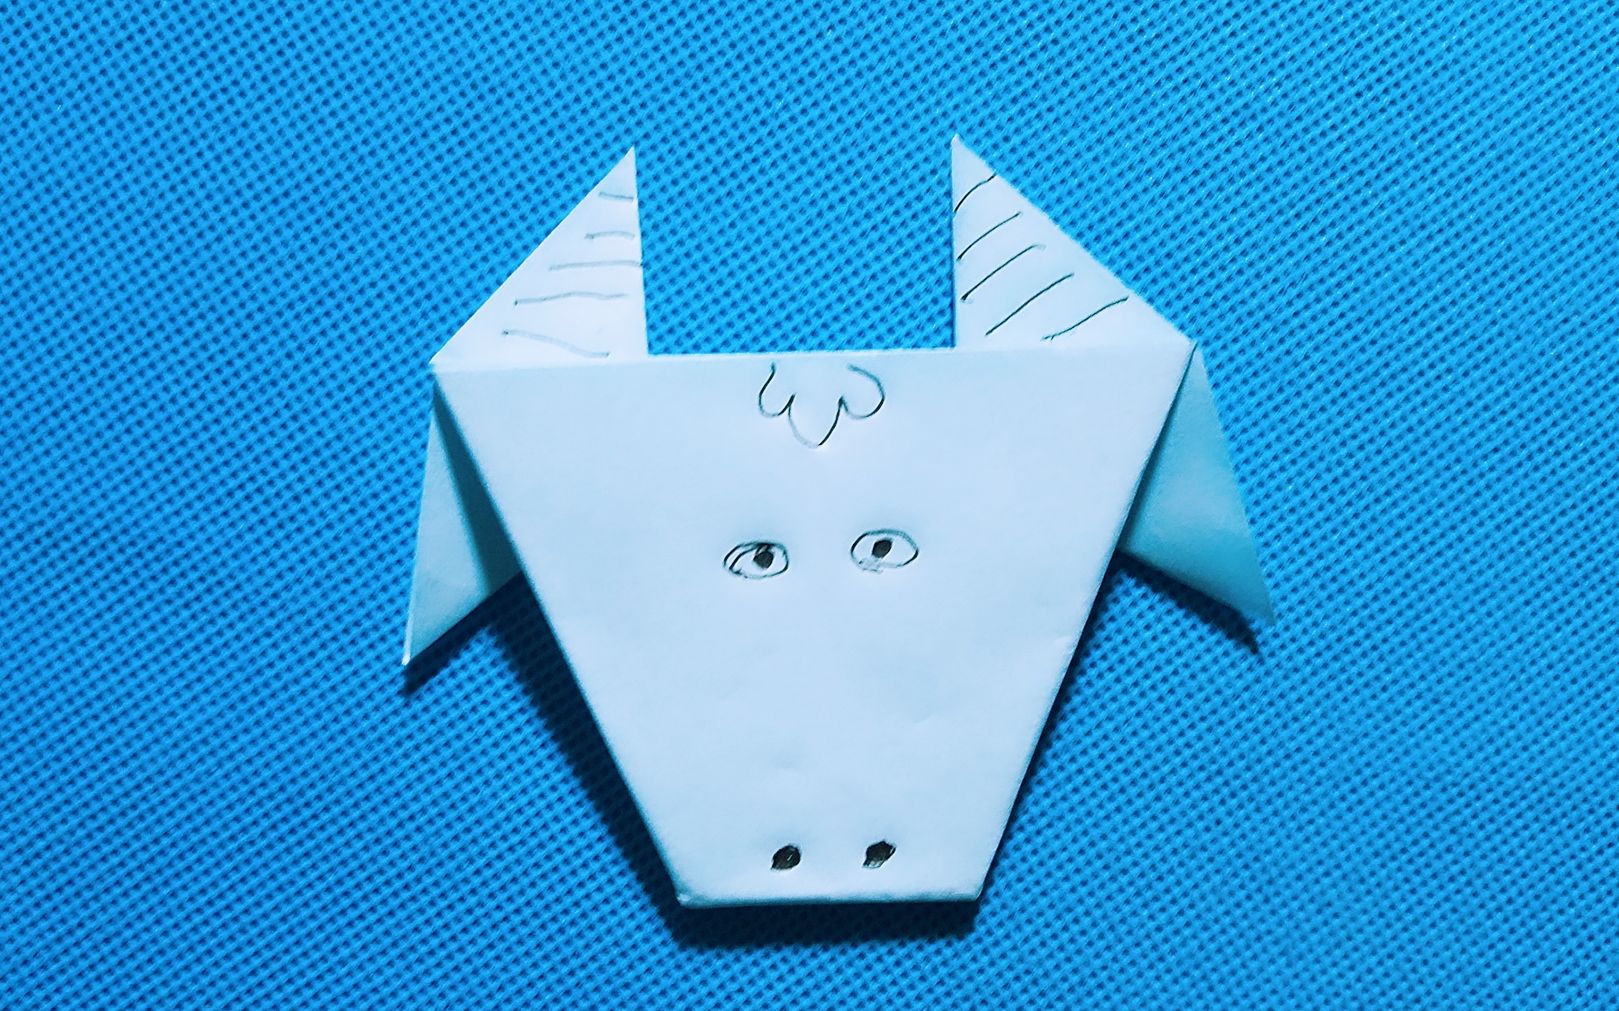 【折纸教程】折纸王子:小牛头折纸大全教程讲解详细一